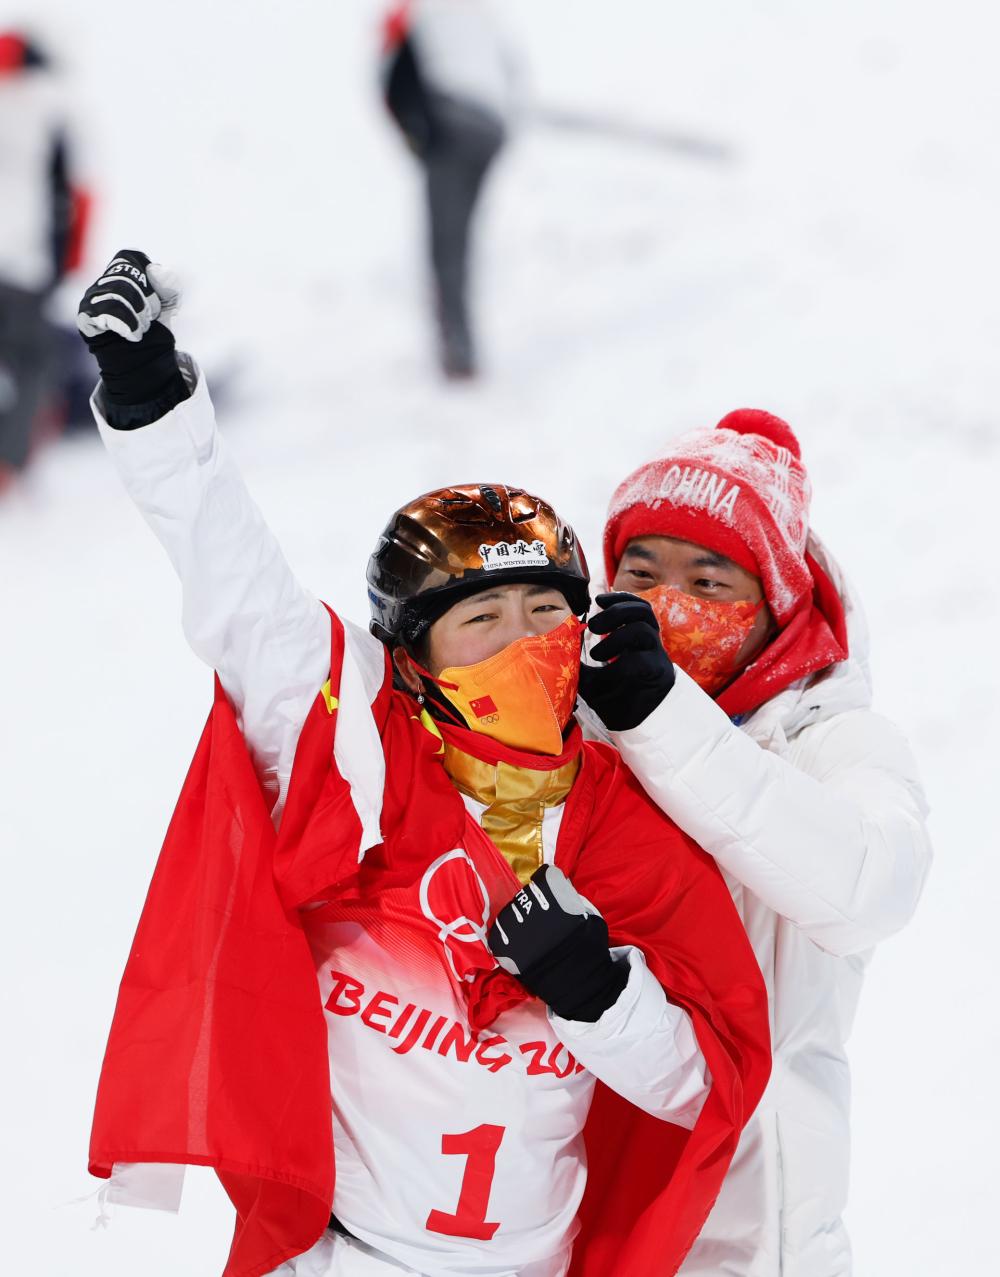 3、中国首届冬奥会**：中国首届冬奥会**得主是谁？